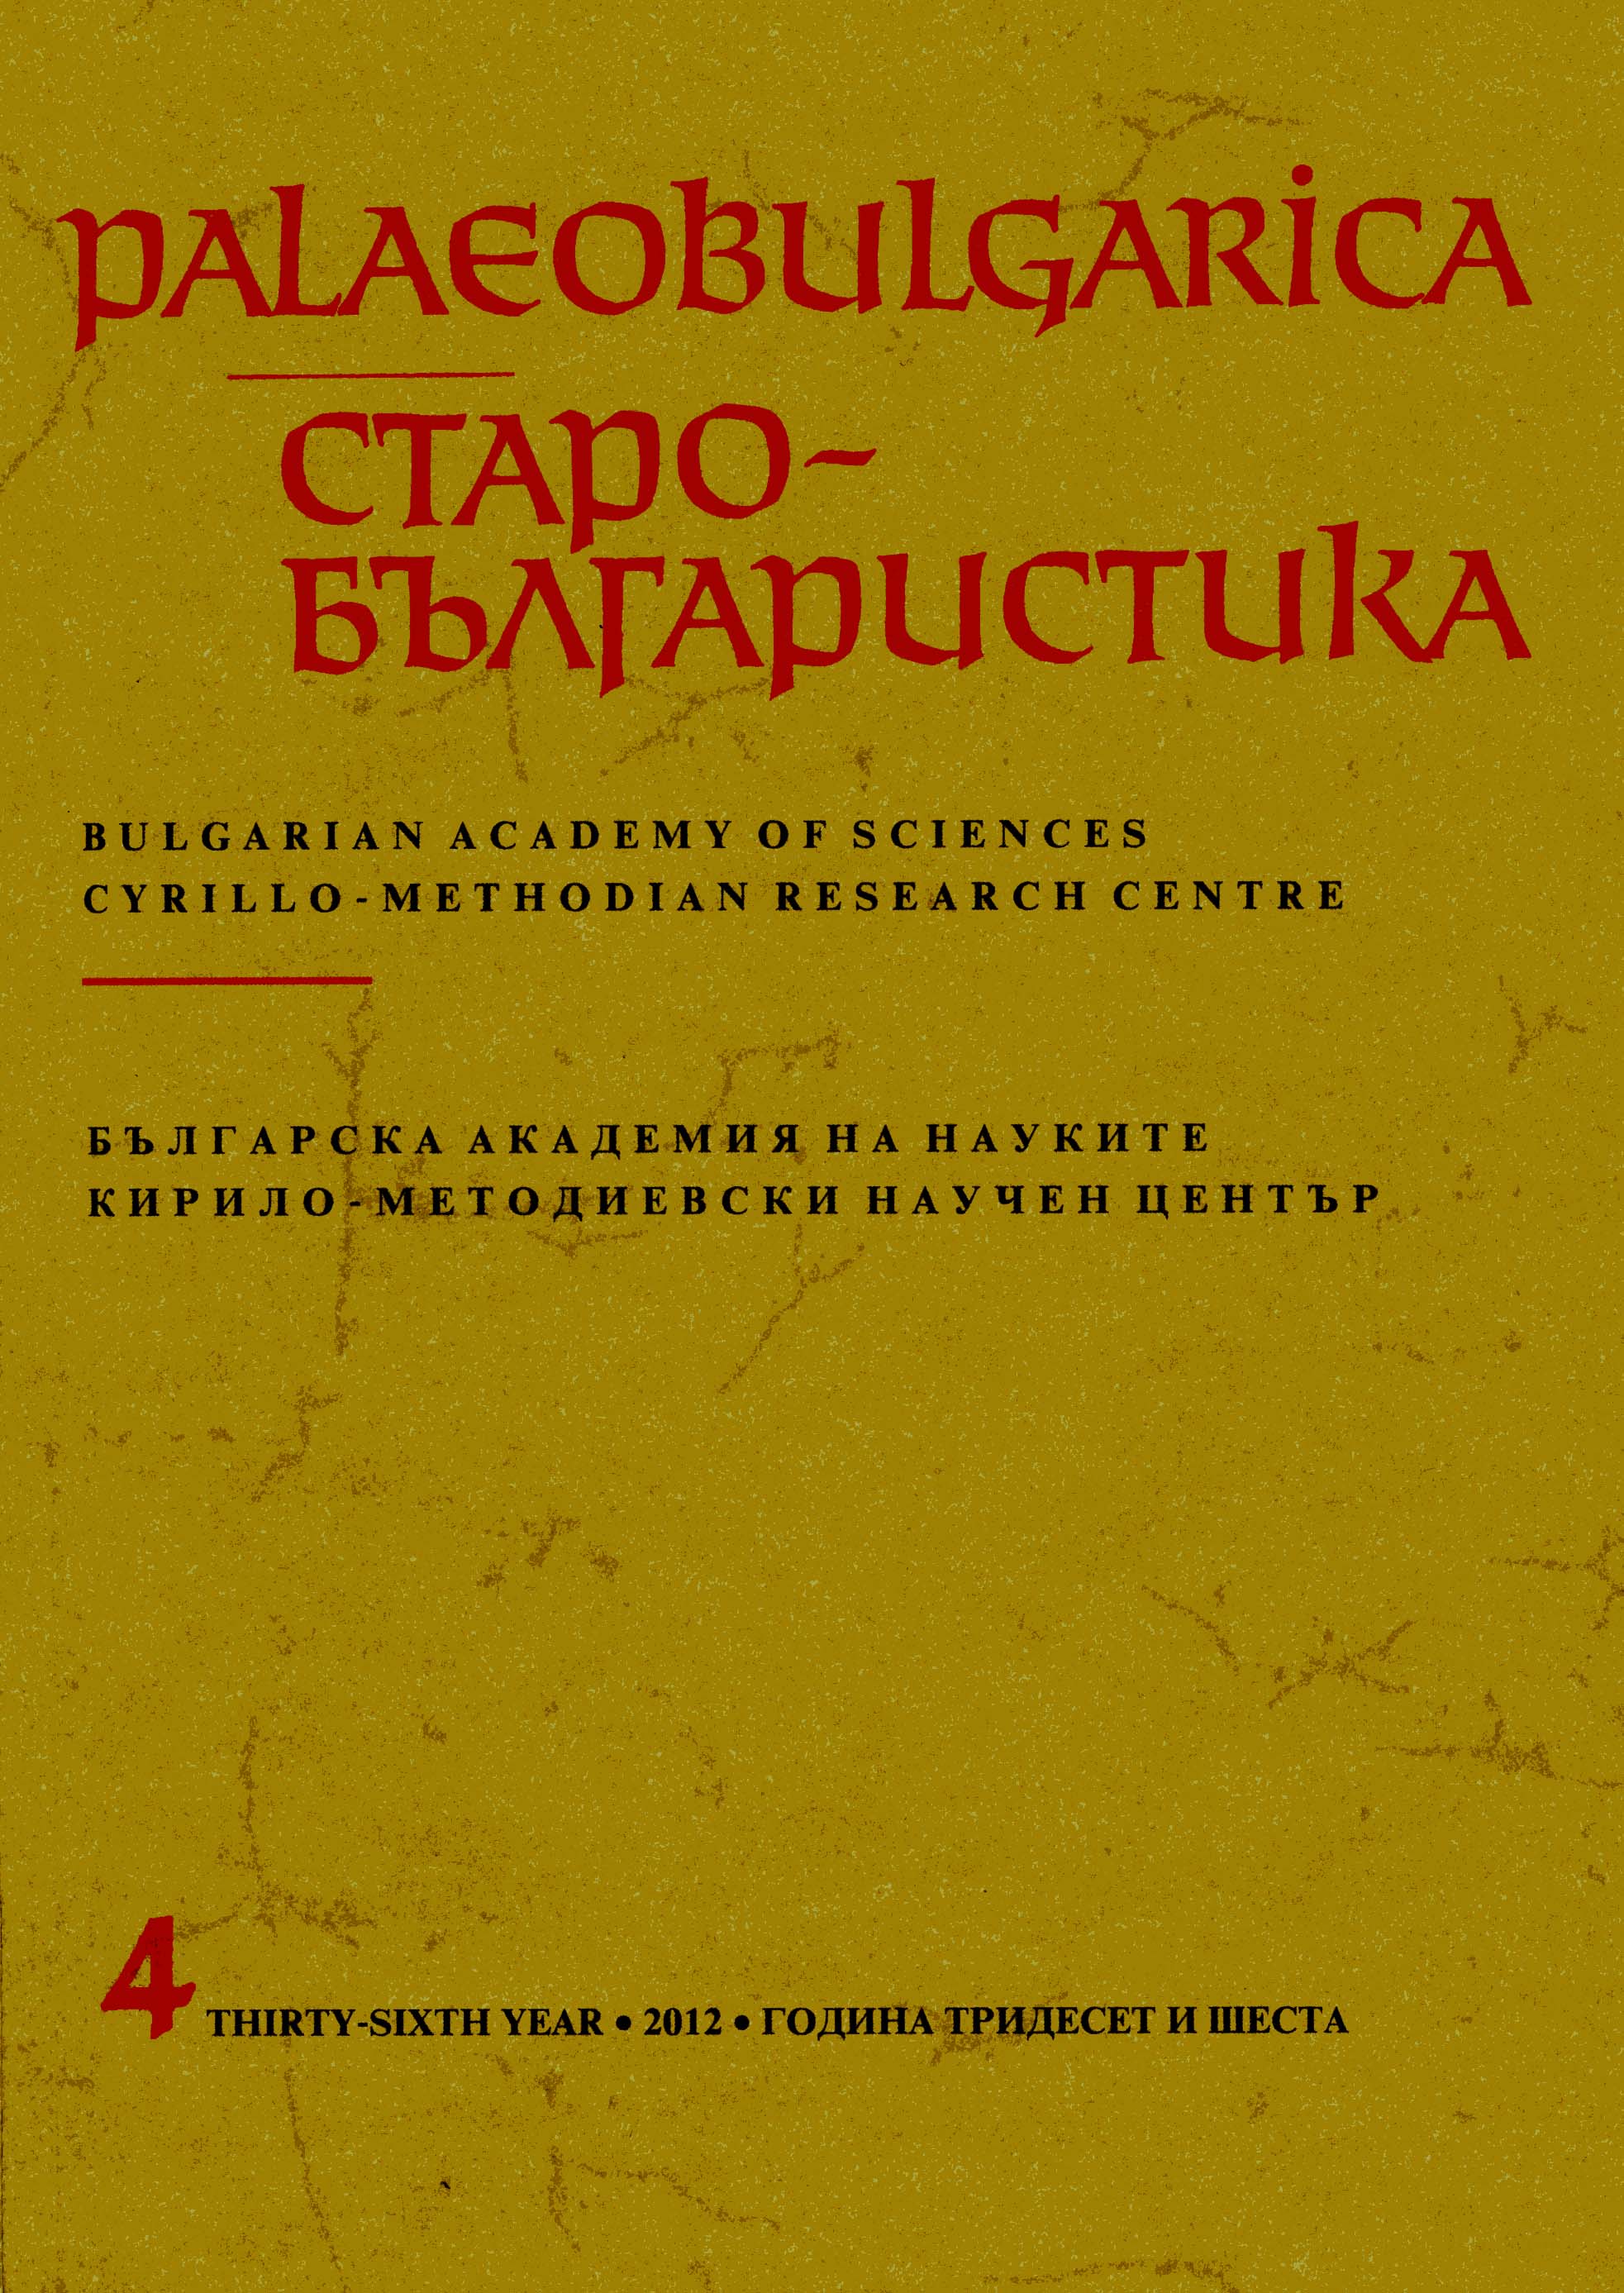 Хилендарската научна библиотека и България –40 години сътрудничество